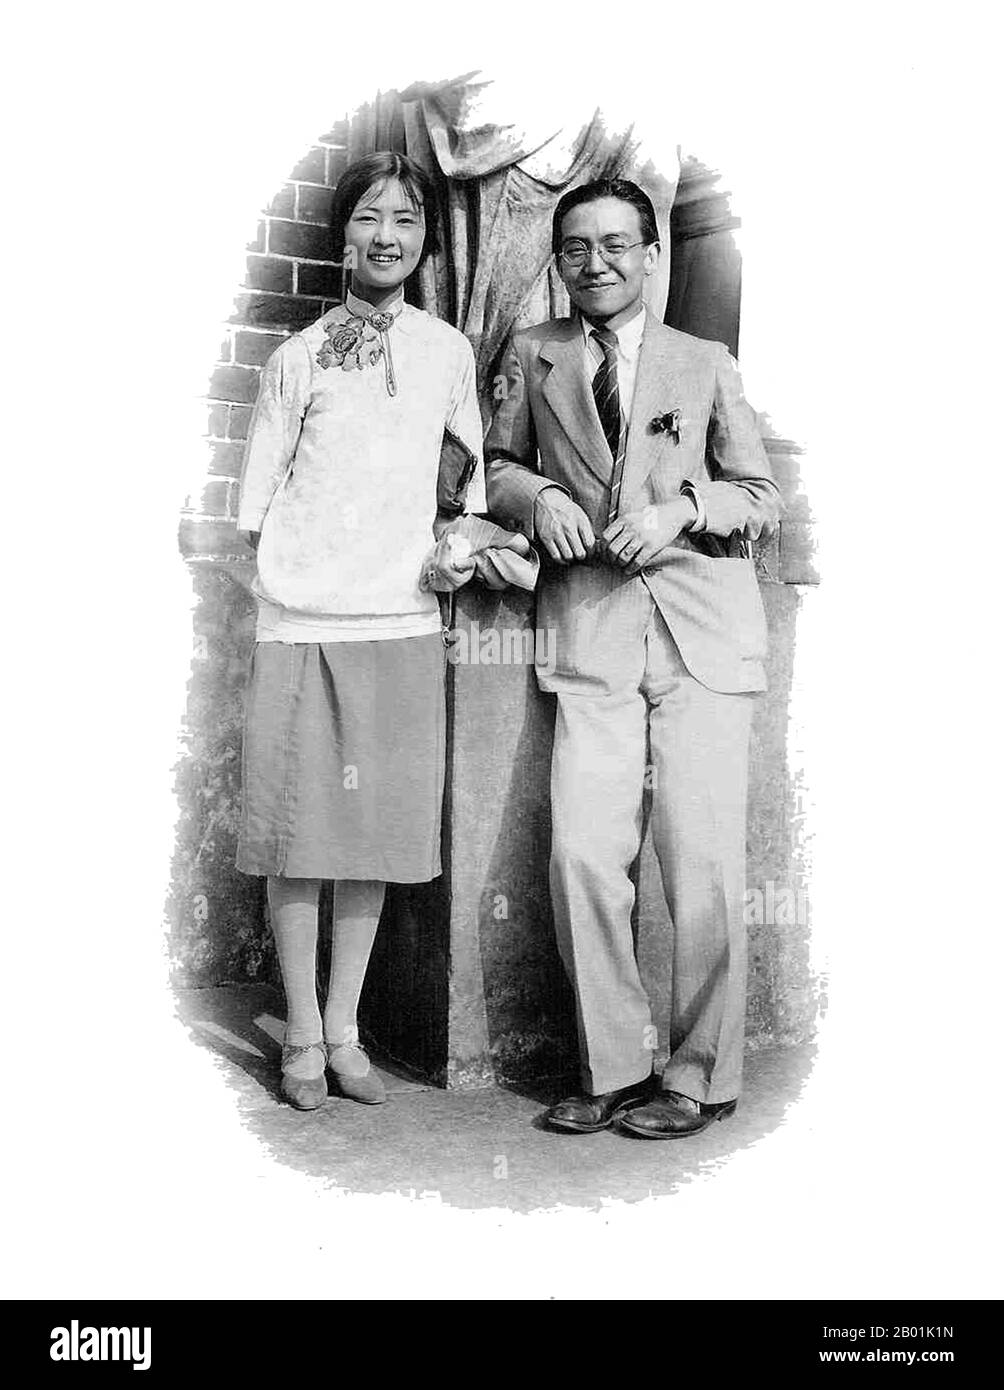 Cina: LIN Huiyin (10 giugno 1904 - 1 aprile 1955), architetto e scrittore cinese, con suo marito Liang Sicheng in luna di miele in Europa, 1928. LIN Huiyin, conosciuto come Phyllis Lin o Lin Whei-yin quando negli Stati Uniti, è stato un noto architetto e scrittore cinese del XX secolo. Si dice che sia stata la prima donna architetto in Cina. Nacque a Hangzhou anche se la sua famiglia aveva radici a Minhou, nella provincia del Fujian. Da una ricca famiglia, Lin Huiyin ricevette la migliore educazione che una donna potesse ottenere in quel momento, studiando sia in Europa che in America. Ha frequentato il St Mary's College a Londra. Foto Stock